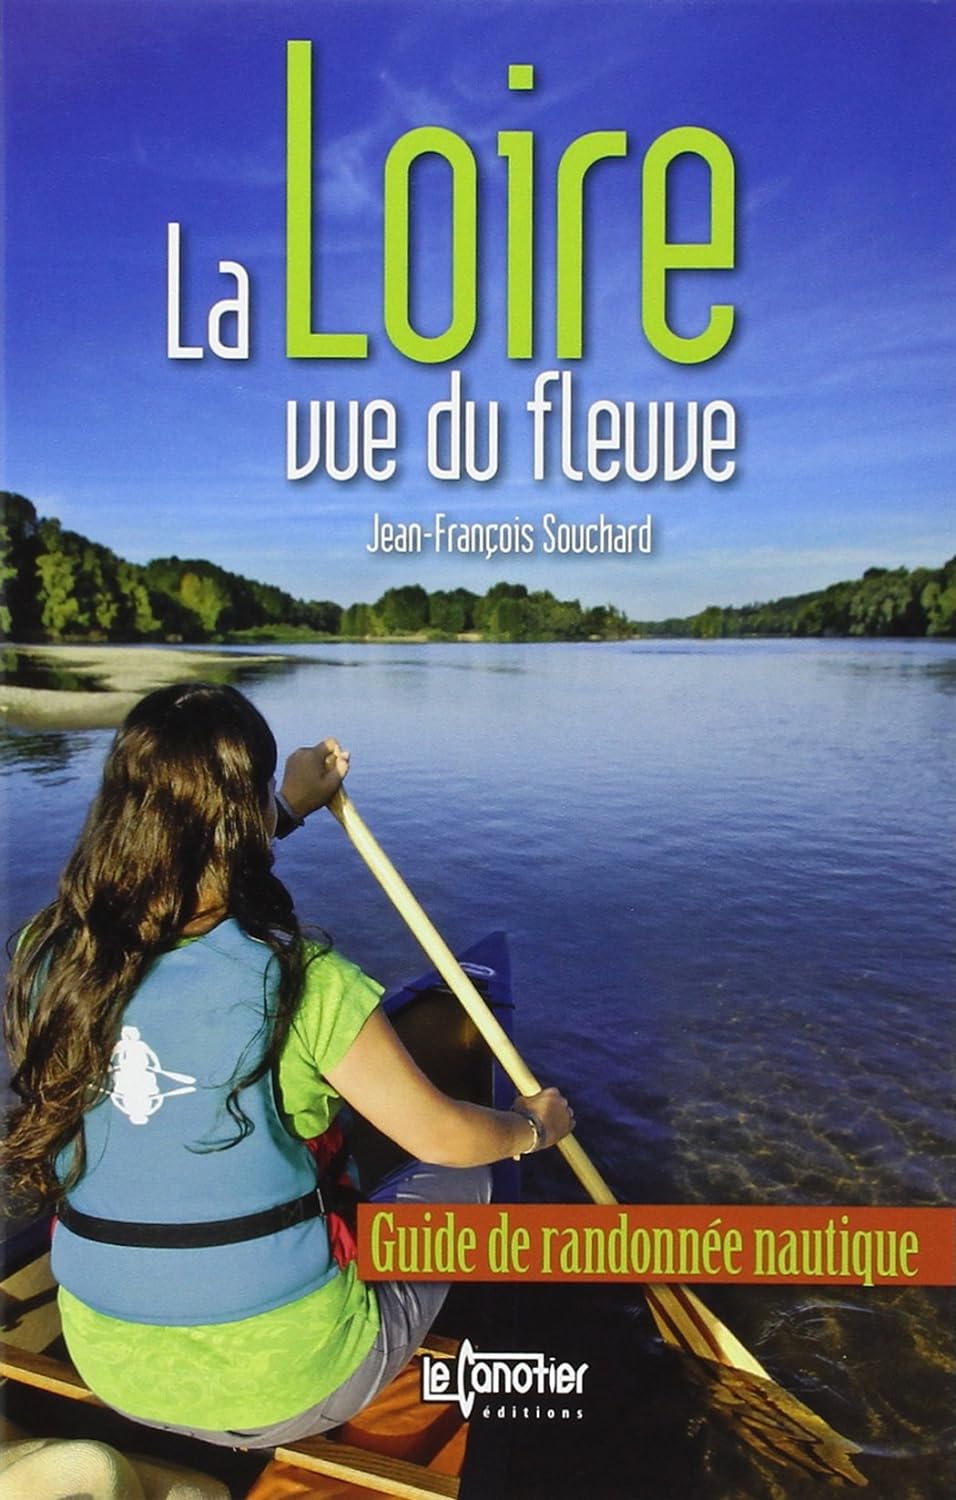 La Loire, vue du fleuve (français language, 2020, Le canotier)